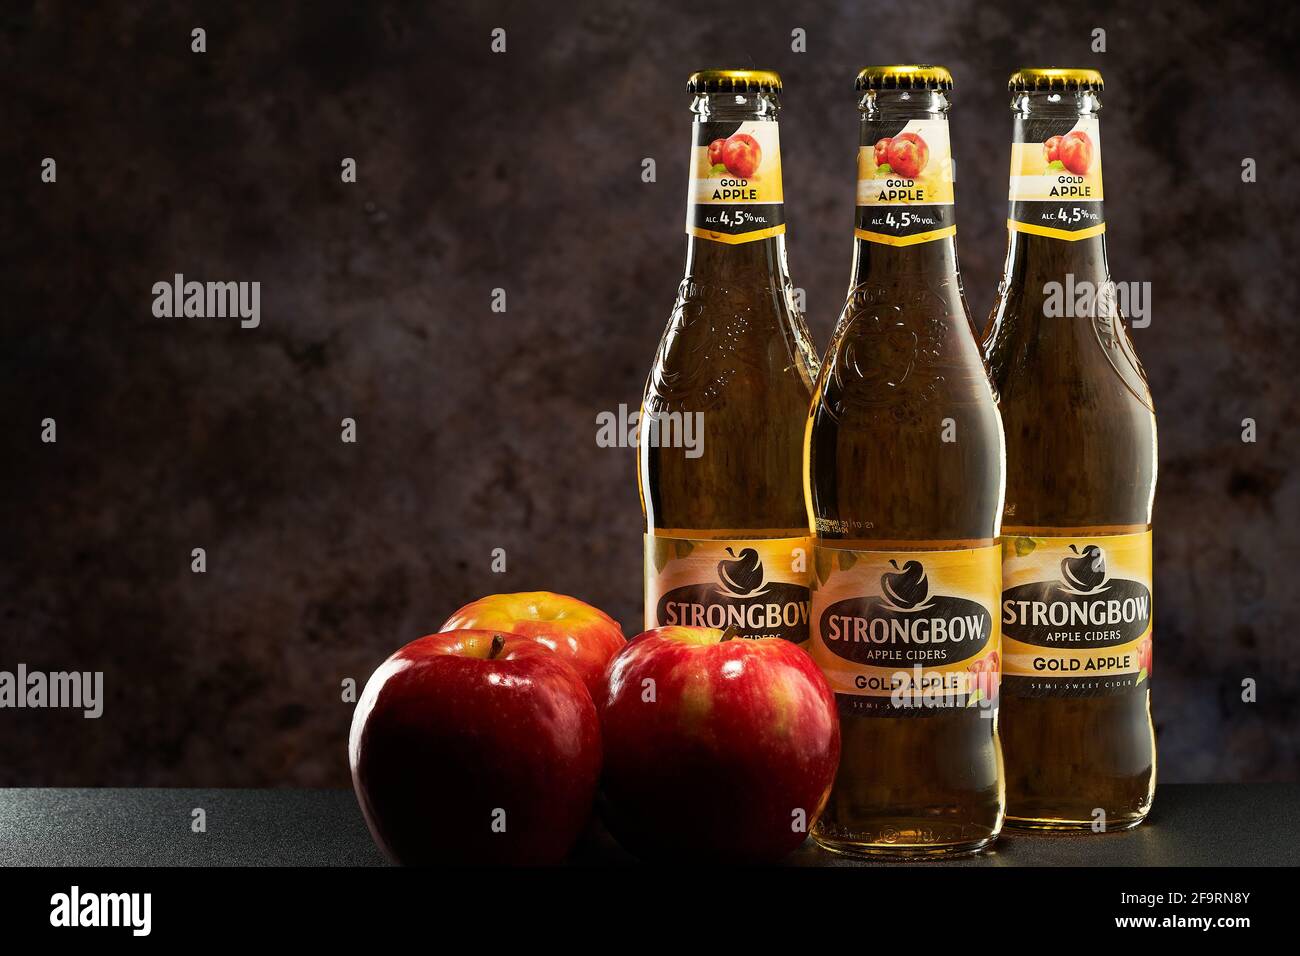 Tel-Aviv, Israel - 20.04.21.Gold Apfelwein helles alkoholisches Getränk auf dunklem Hintergrund. Drei frische rote Äpfel auf der Flaschenseite. Stockfoto